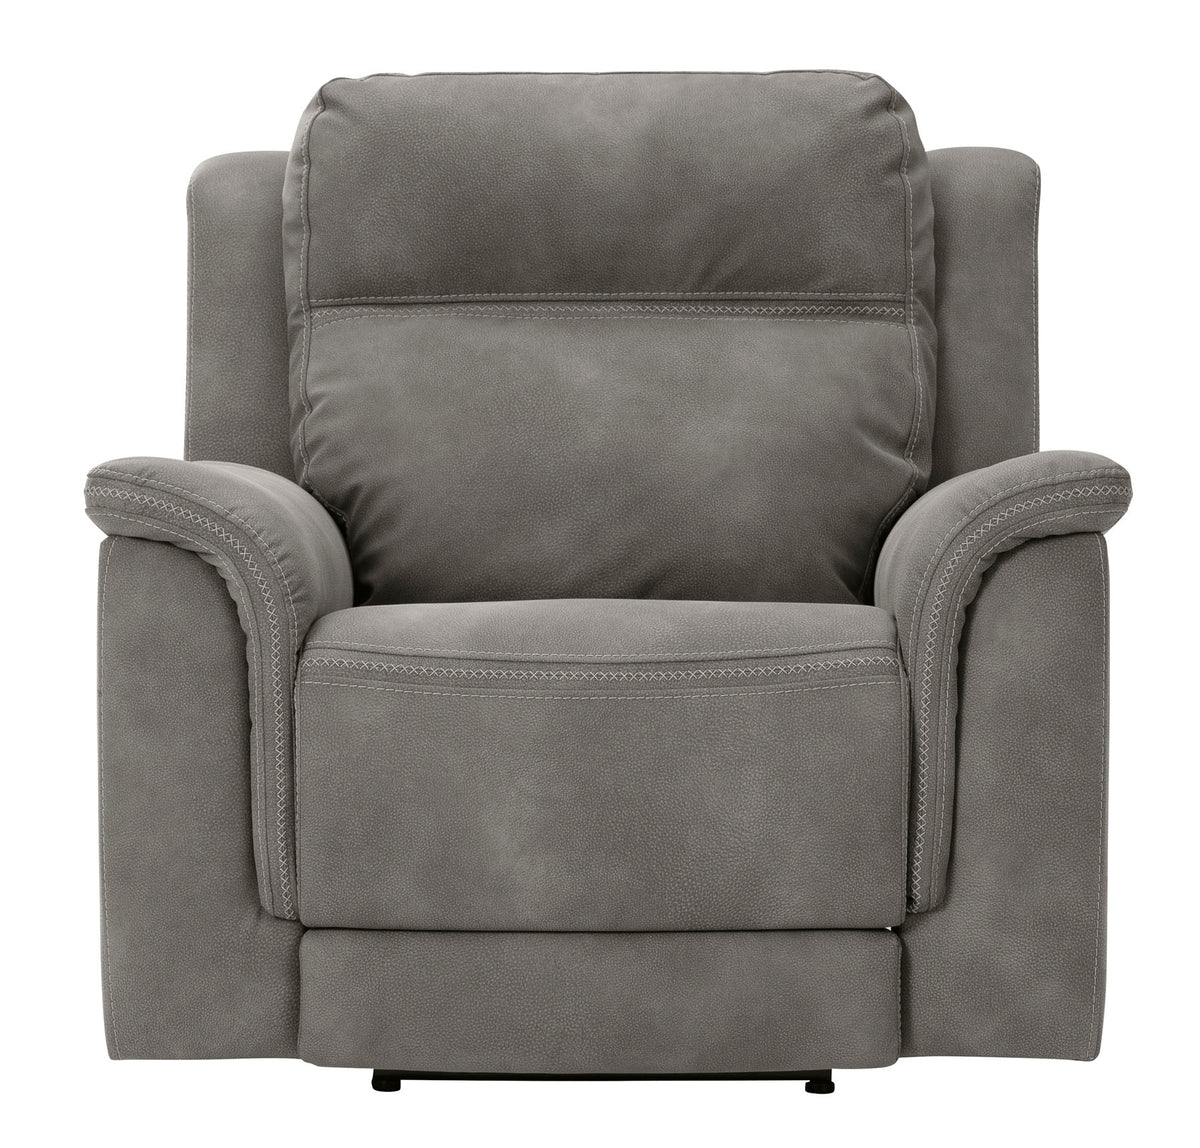 Next-Gen Slate Power Reclining Chair - MJM Furniture